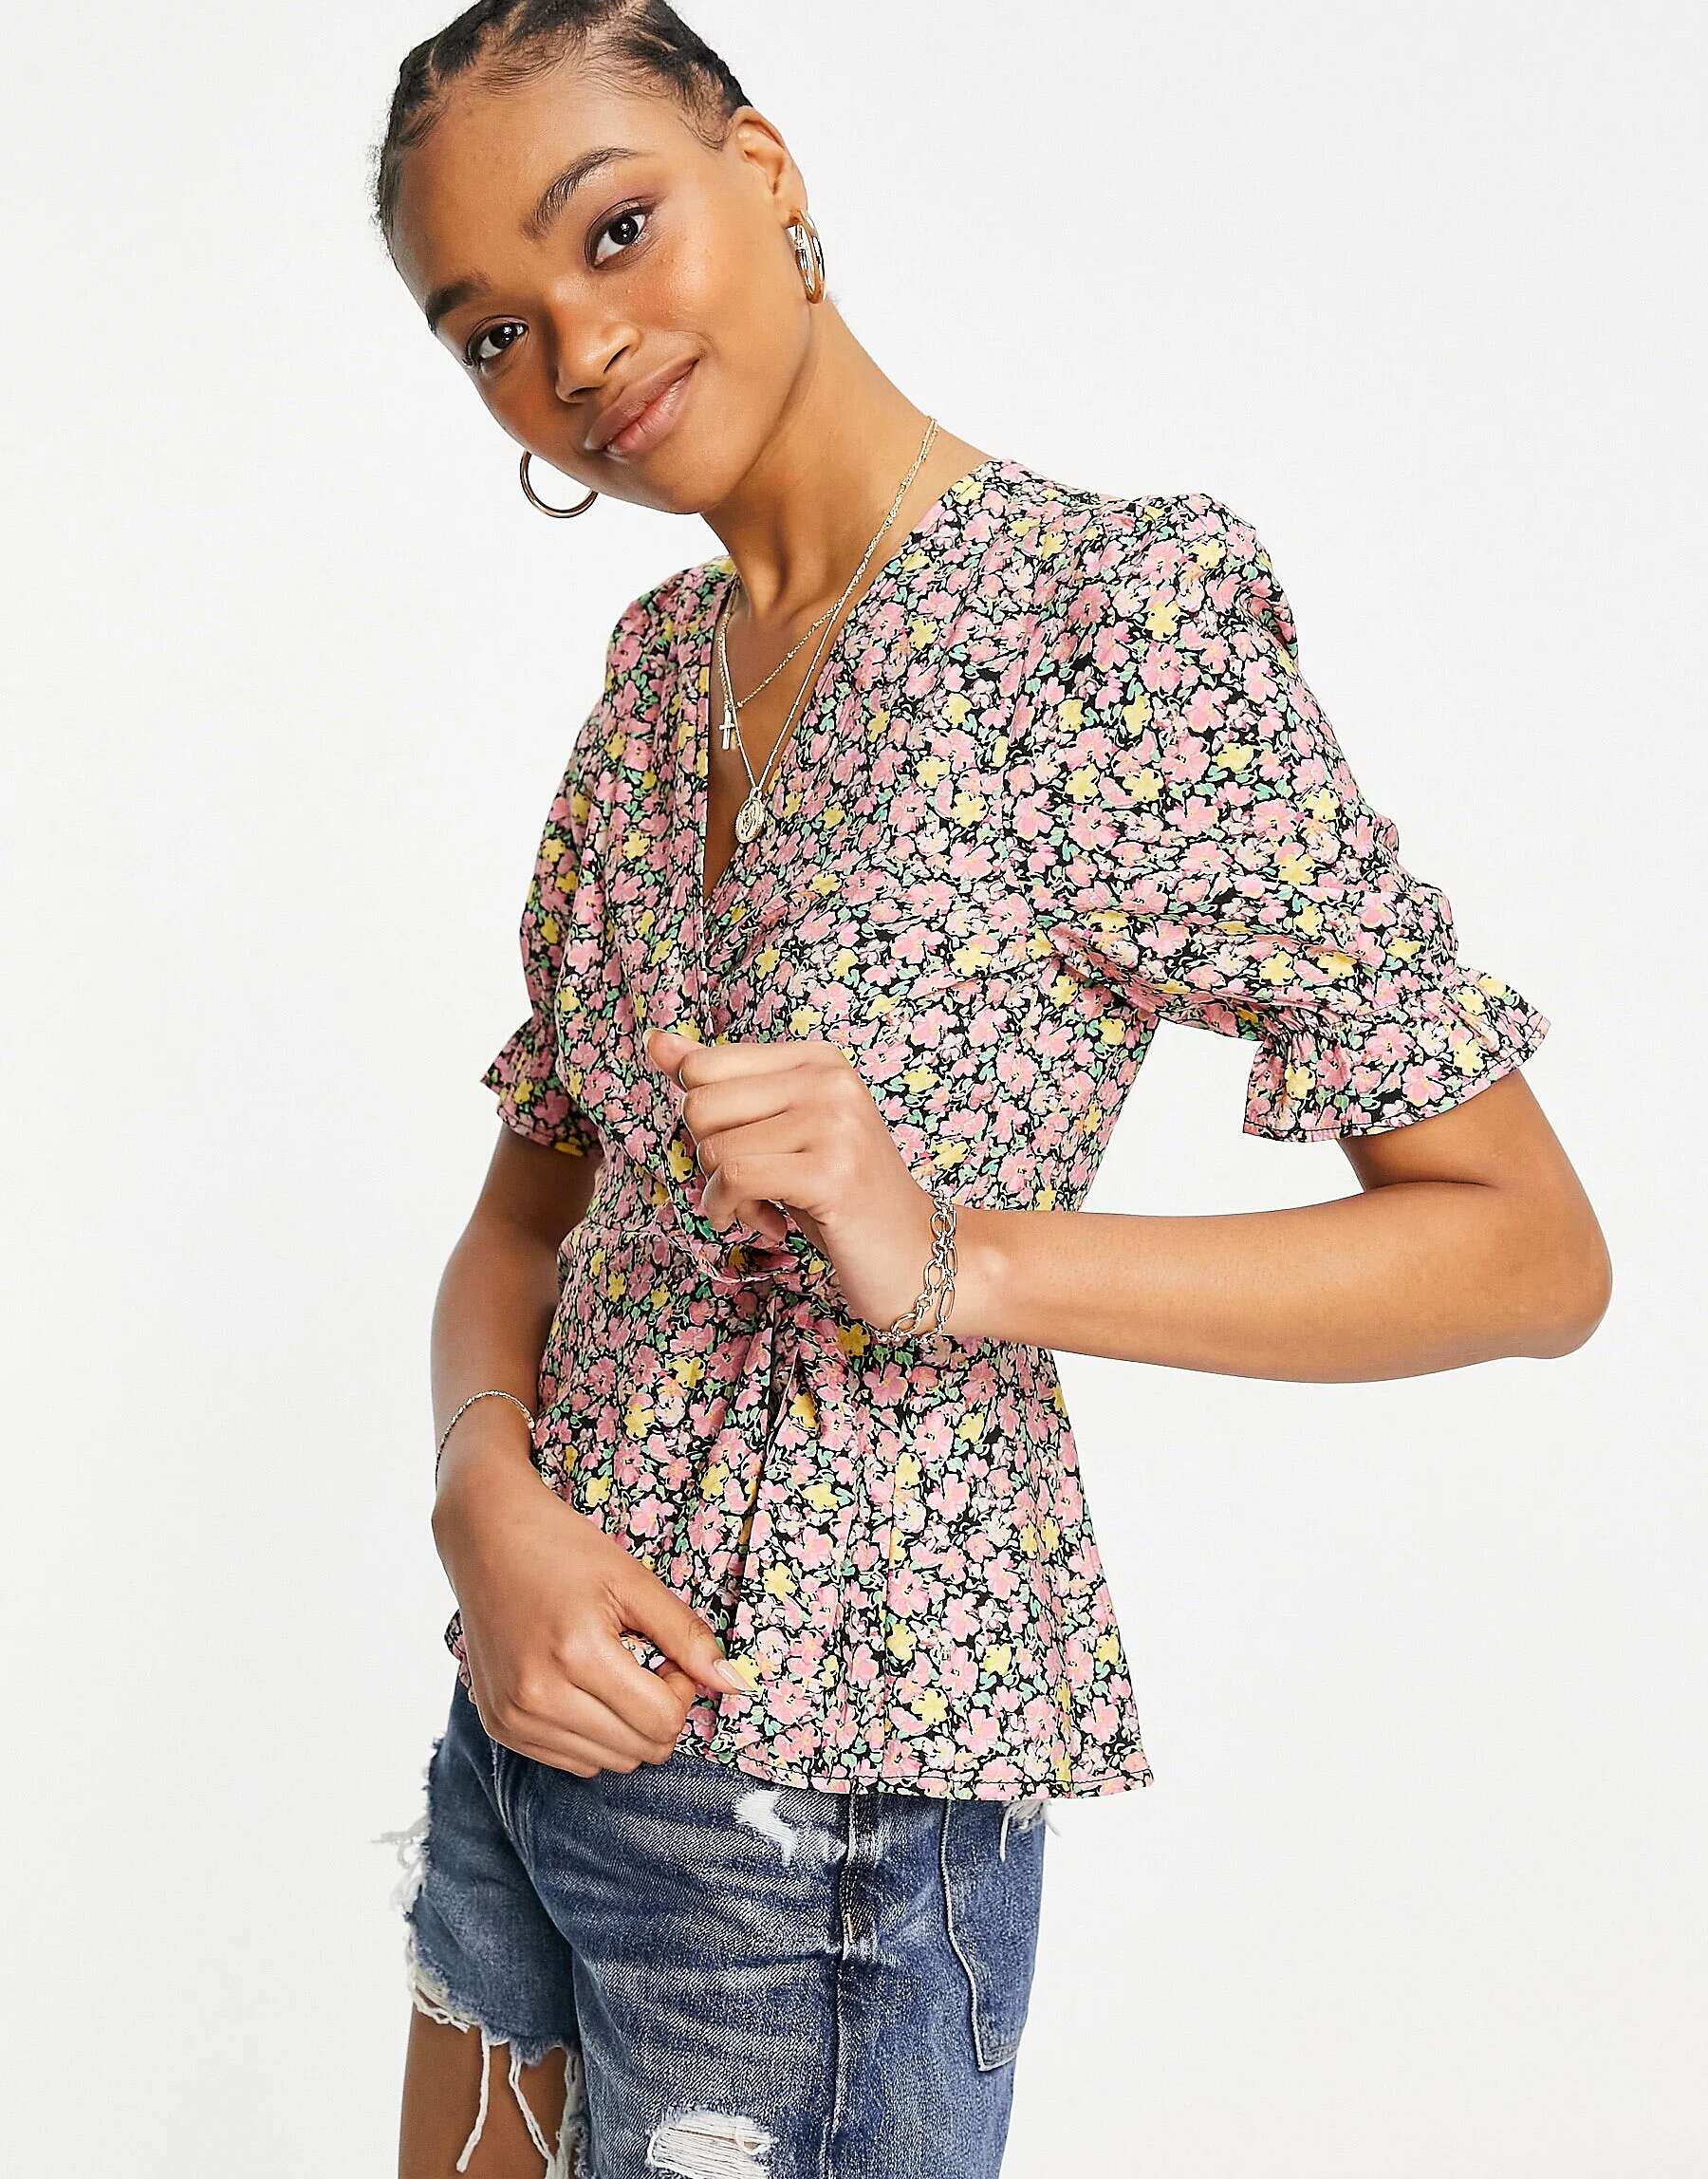 Блузка с запахом Vero Moda с ярким цветочным принтом блузка с запахом vero moda сиреневого цвета с ярким цветочным принтом